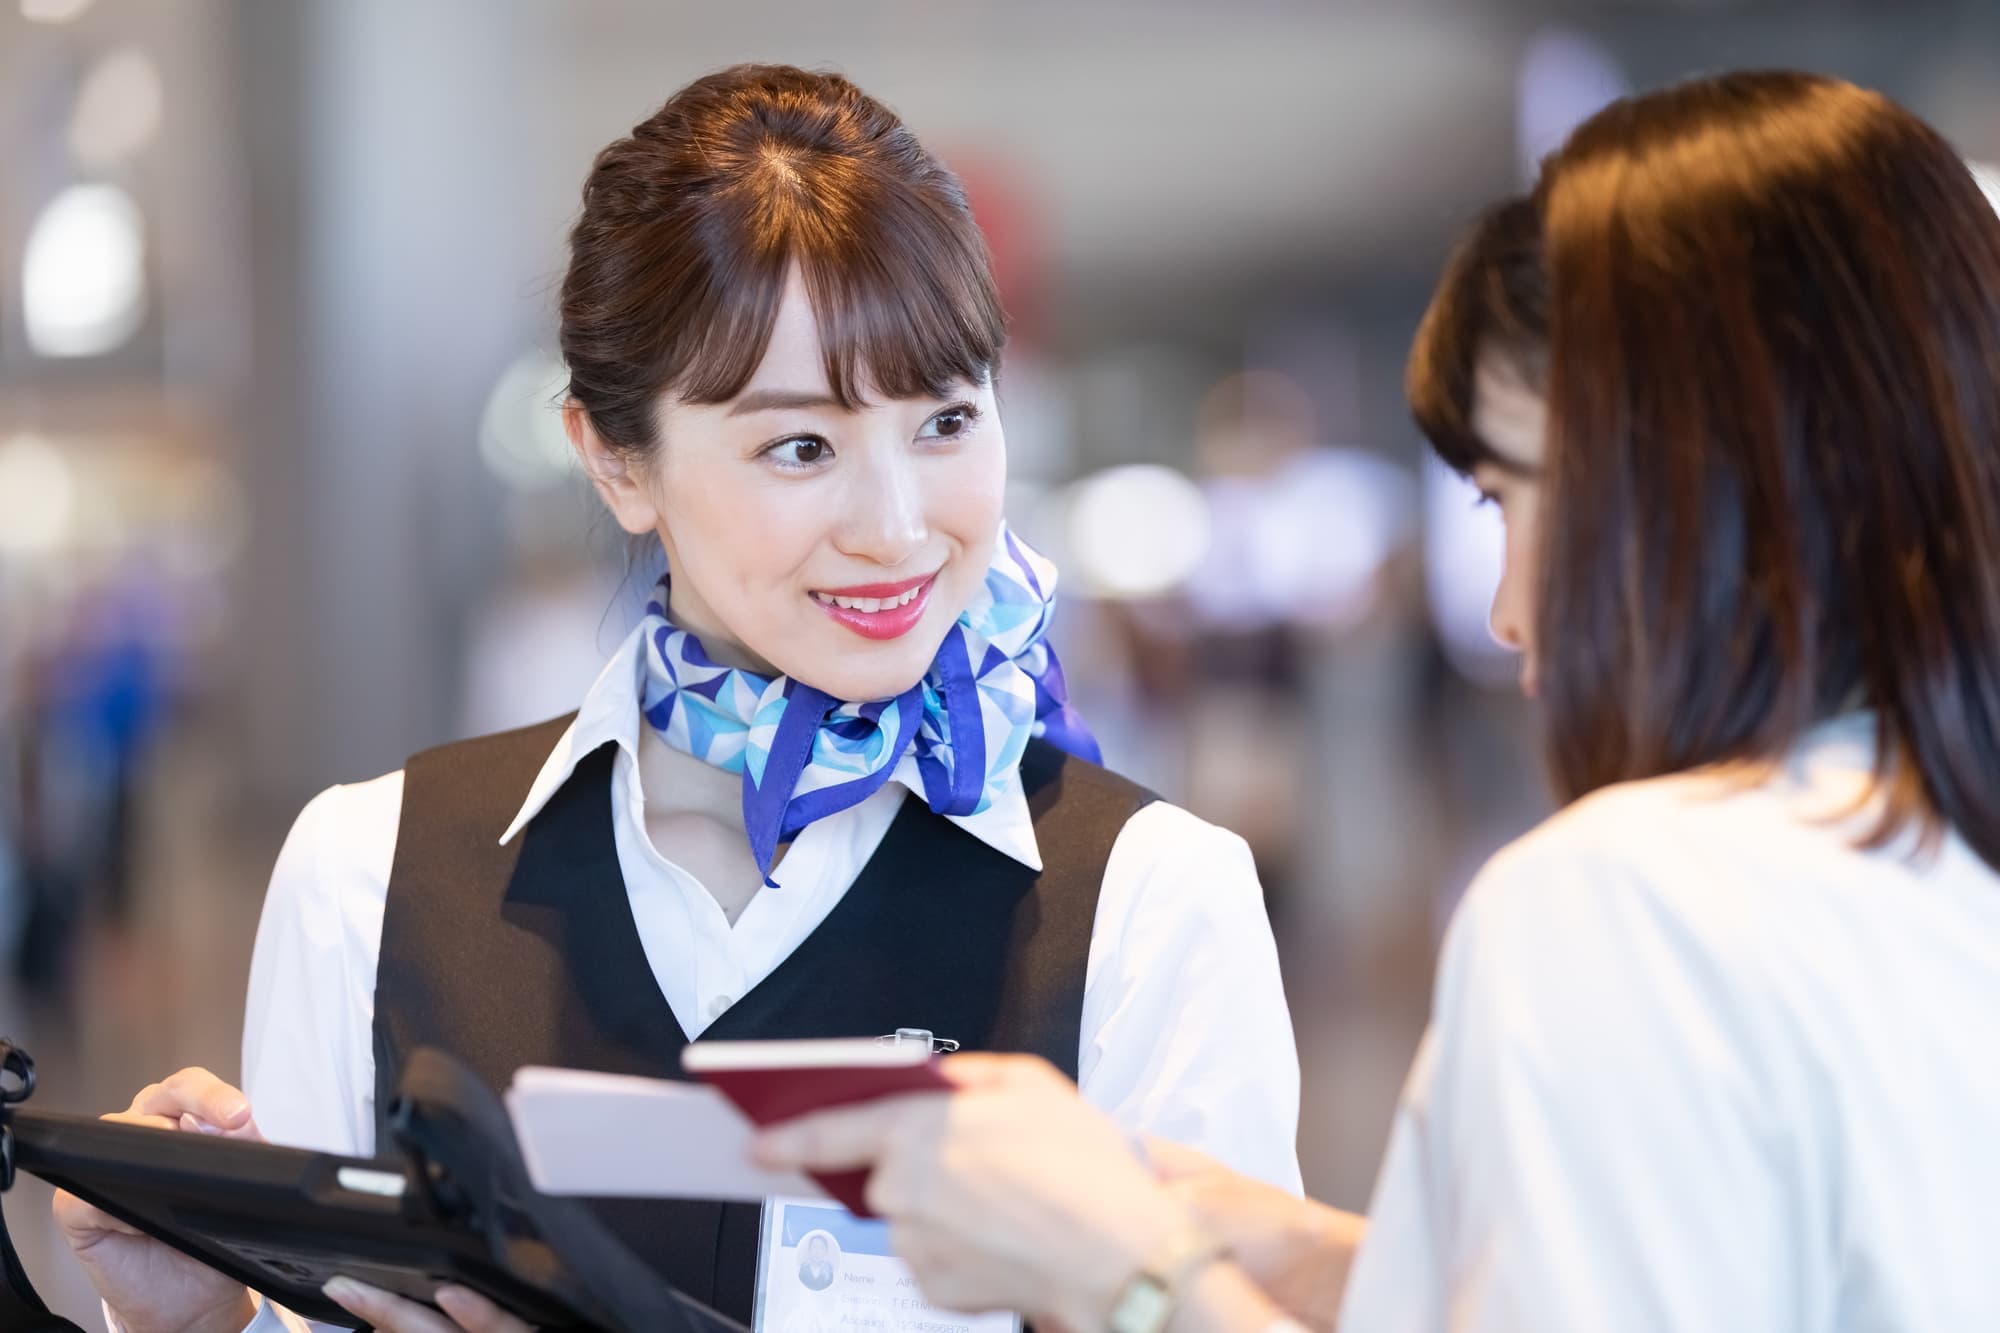  福岡空港グランドスタッフ女性と搭乗客